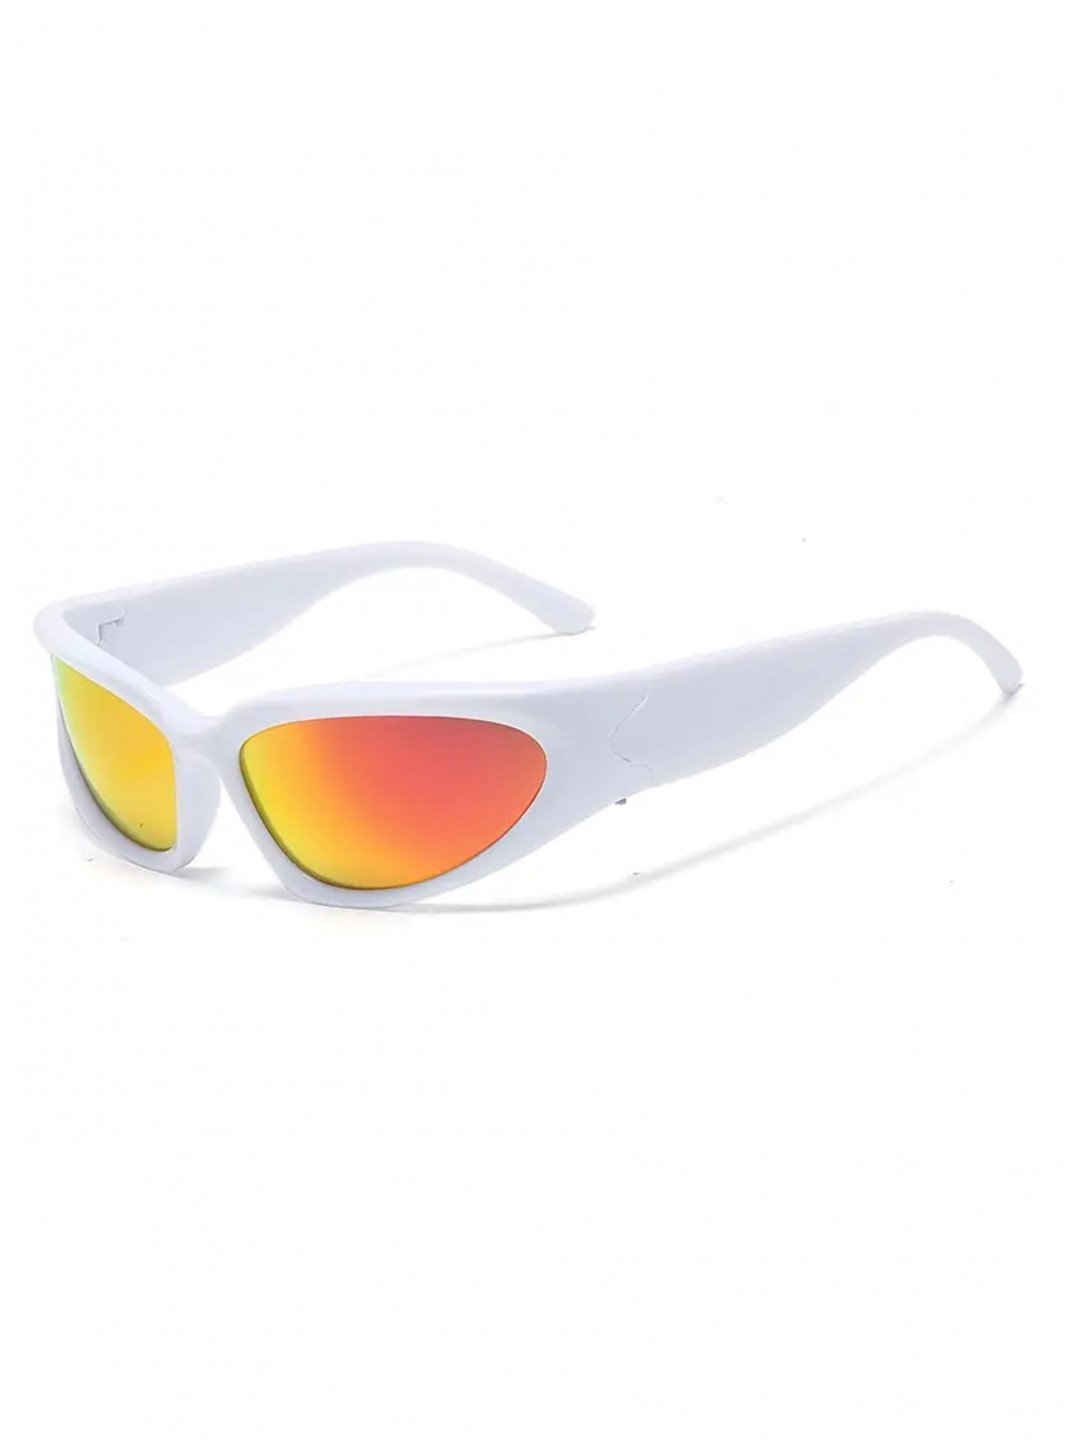 Bílé unisex sportovní sluneční brýle VeyRey Steampunk Gezrel